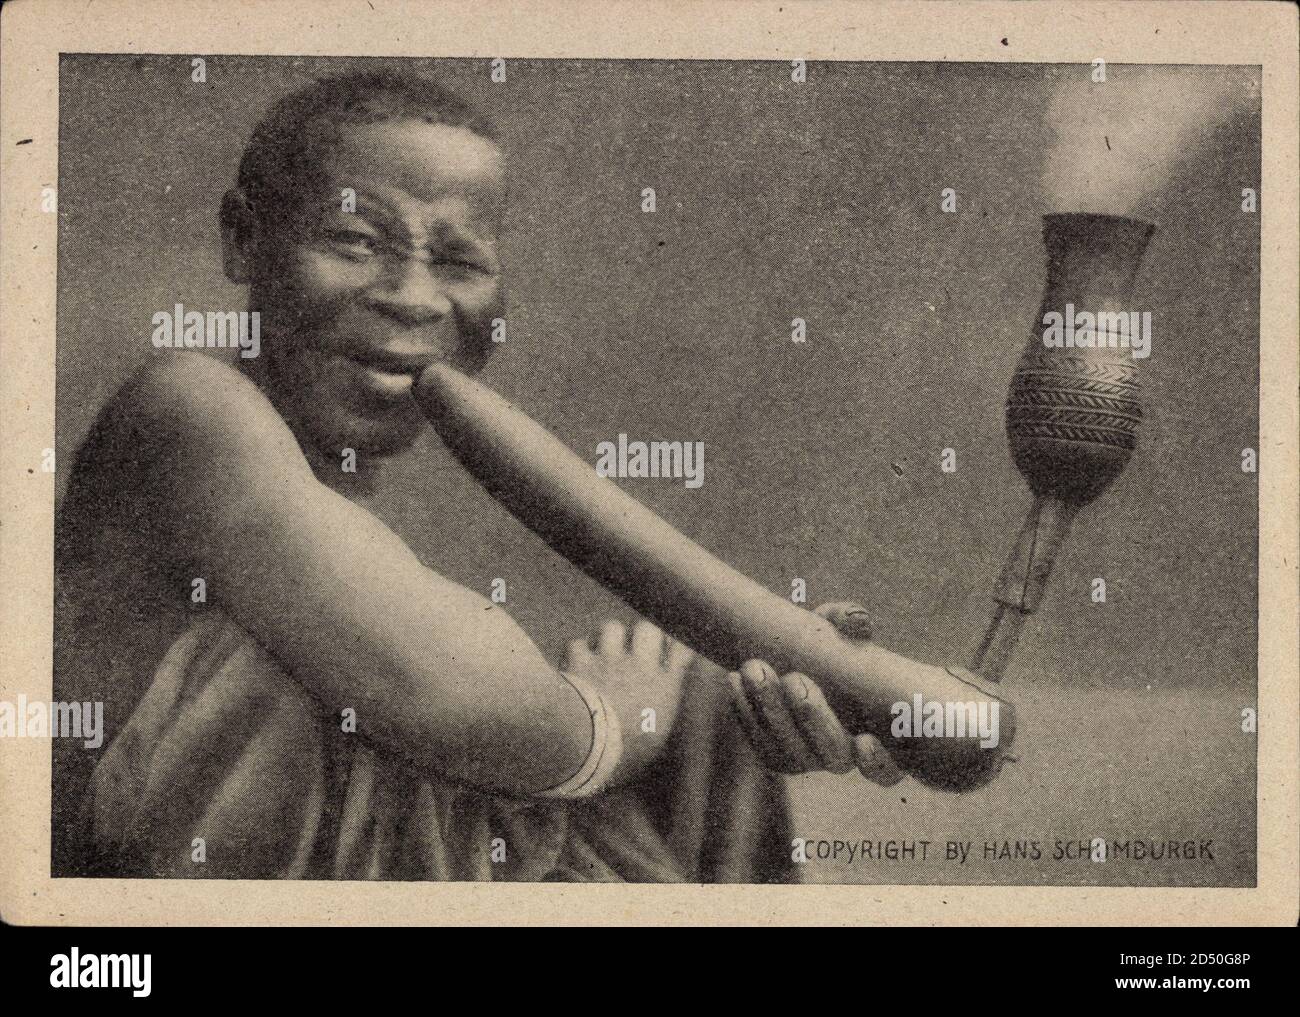 Schomburgk Afrikaserie, Freunde im Busch, Afrikanerin raucht Pfeiffe | usage worldwide Stock Photo